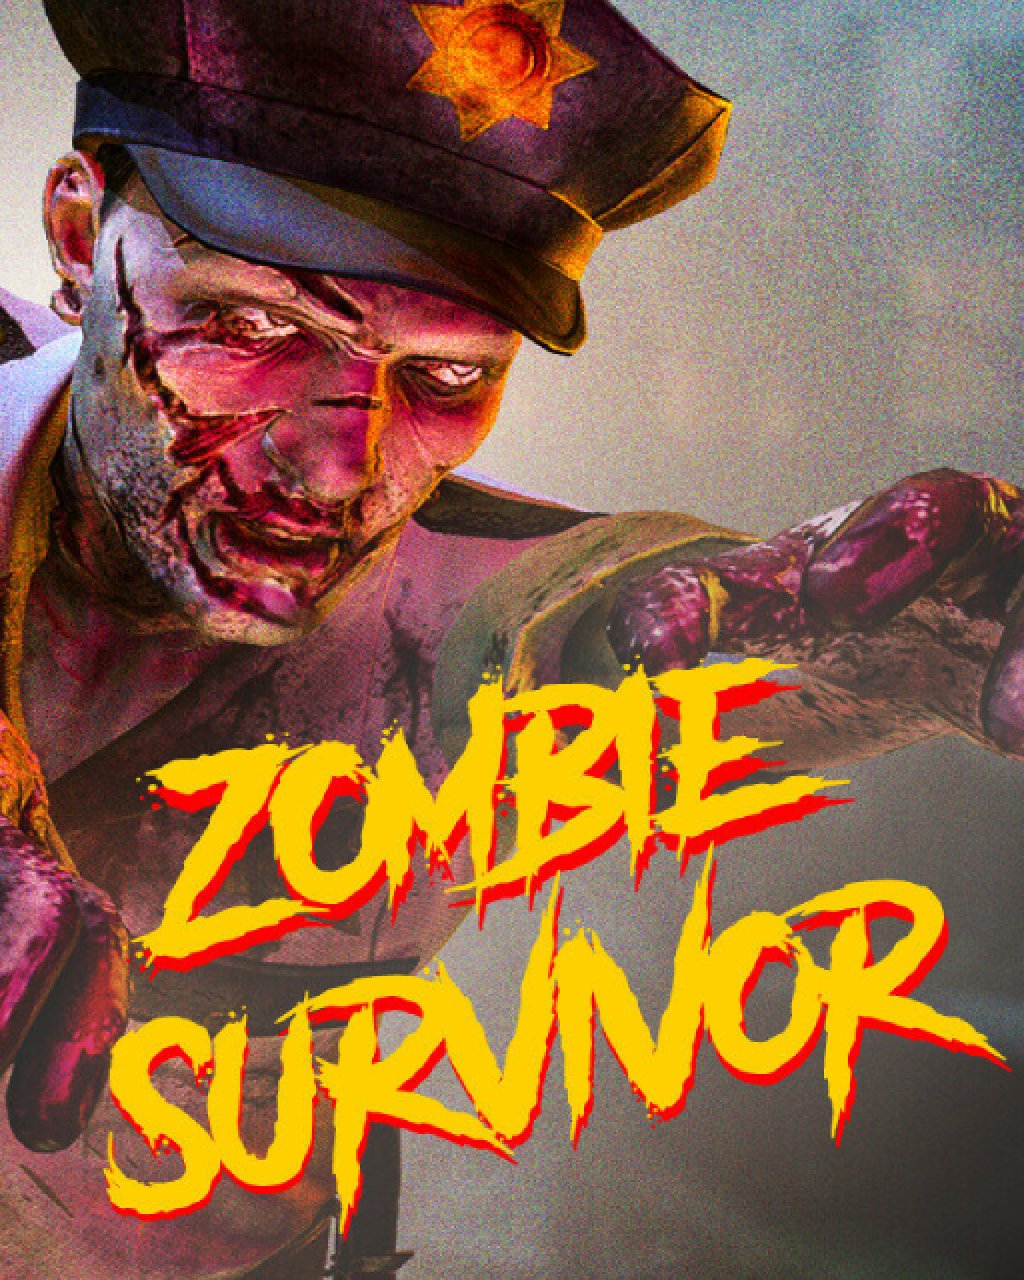 Zombie Survivor Undead City Attack